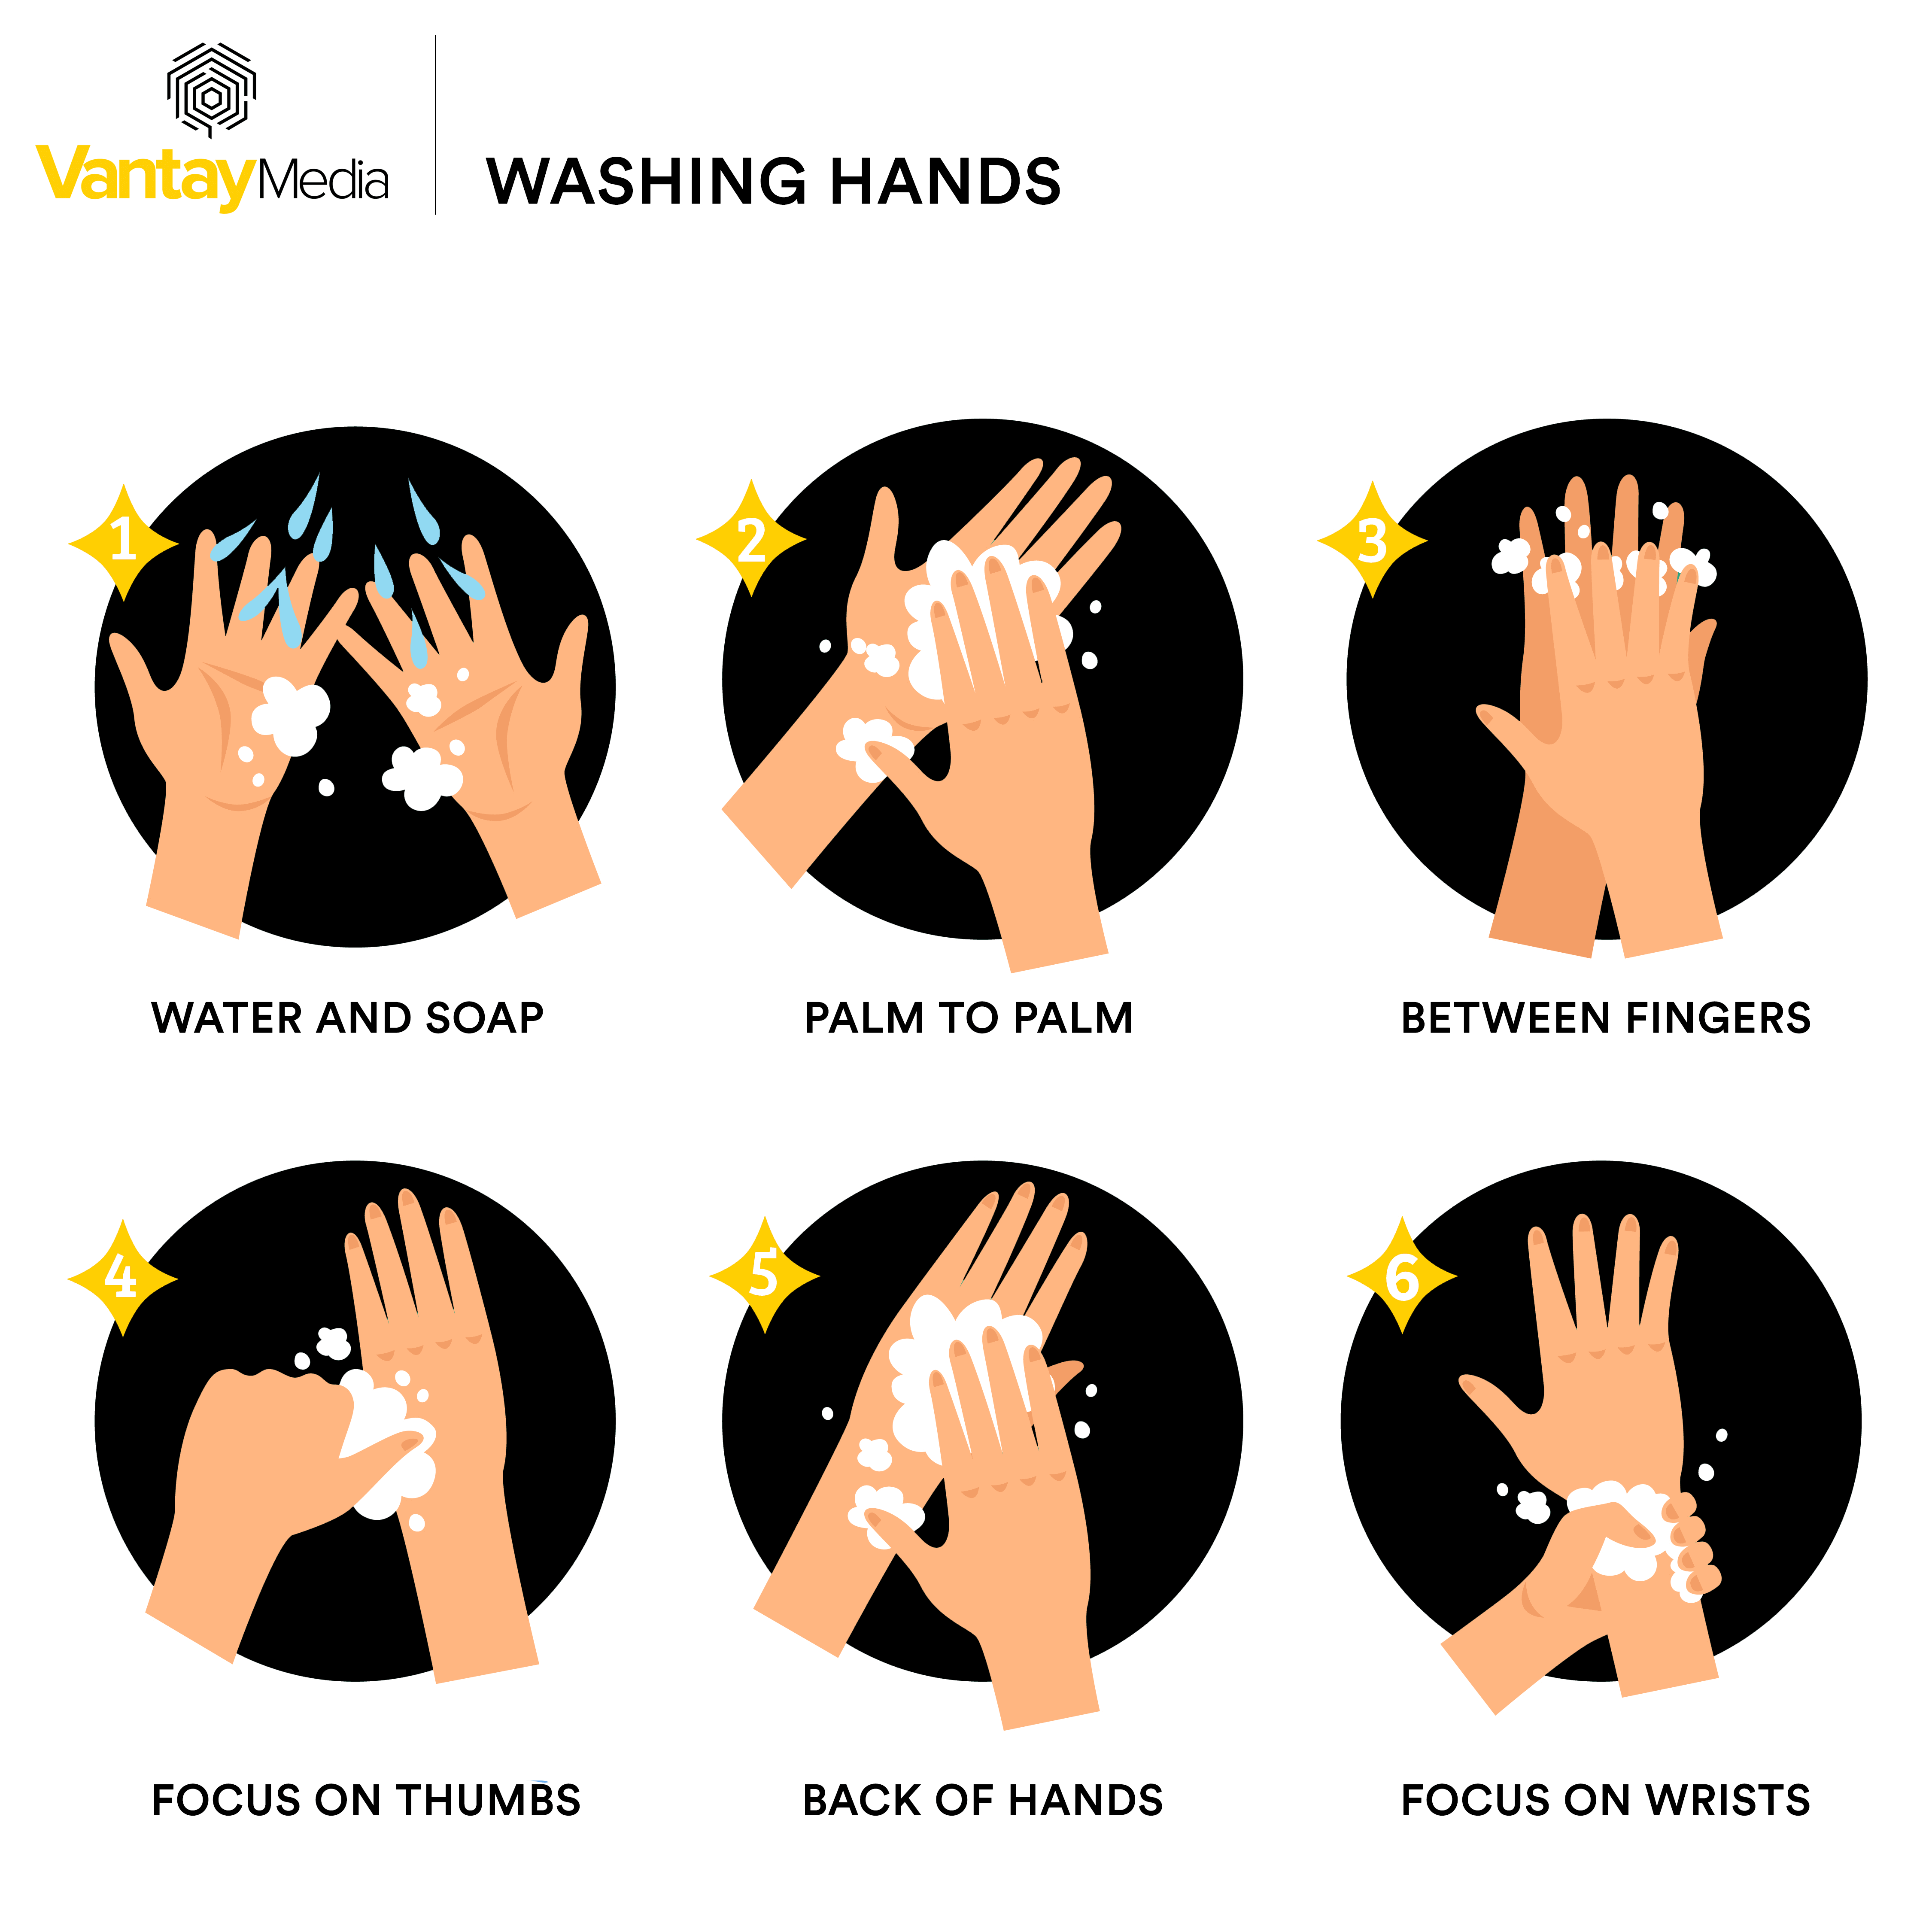 wash your hands Van Tay Media